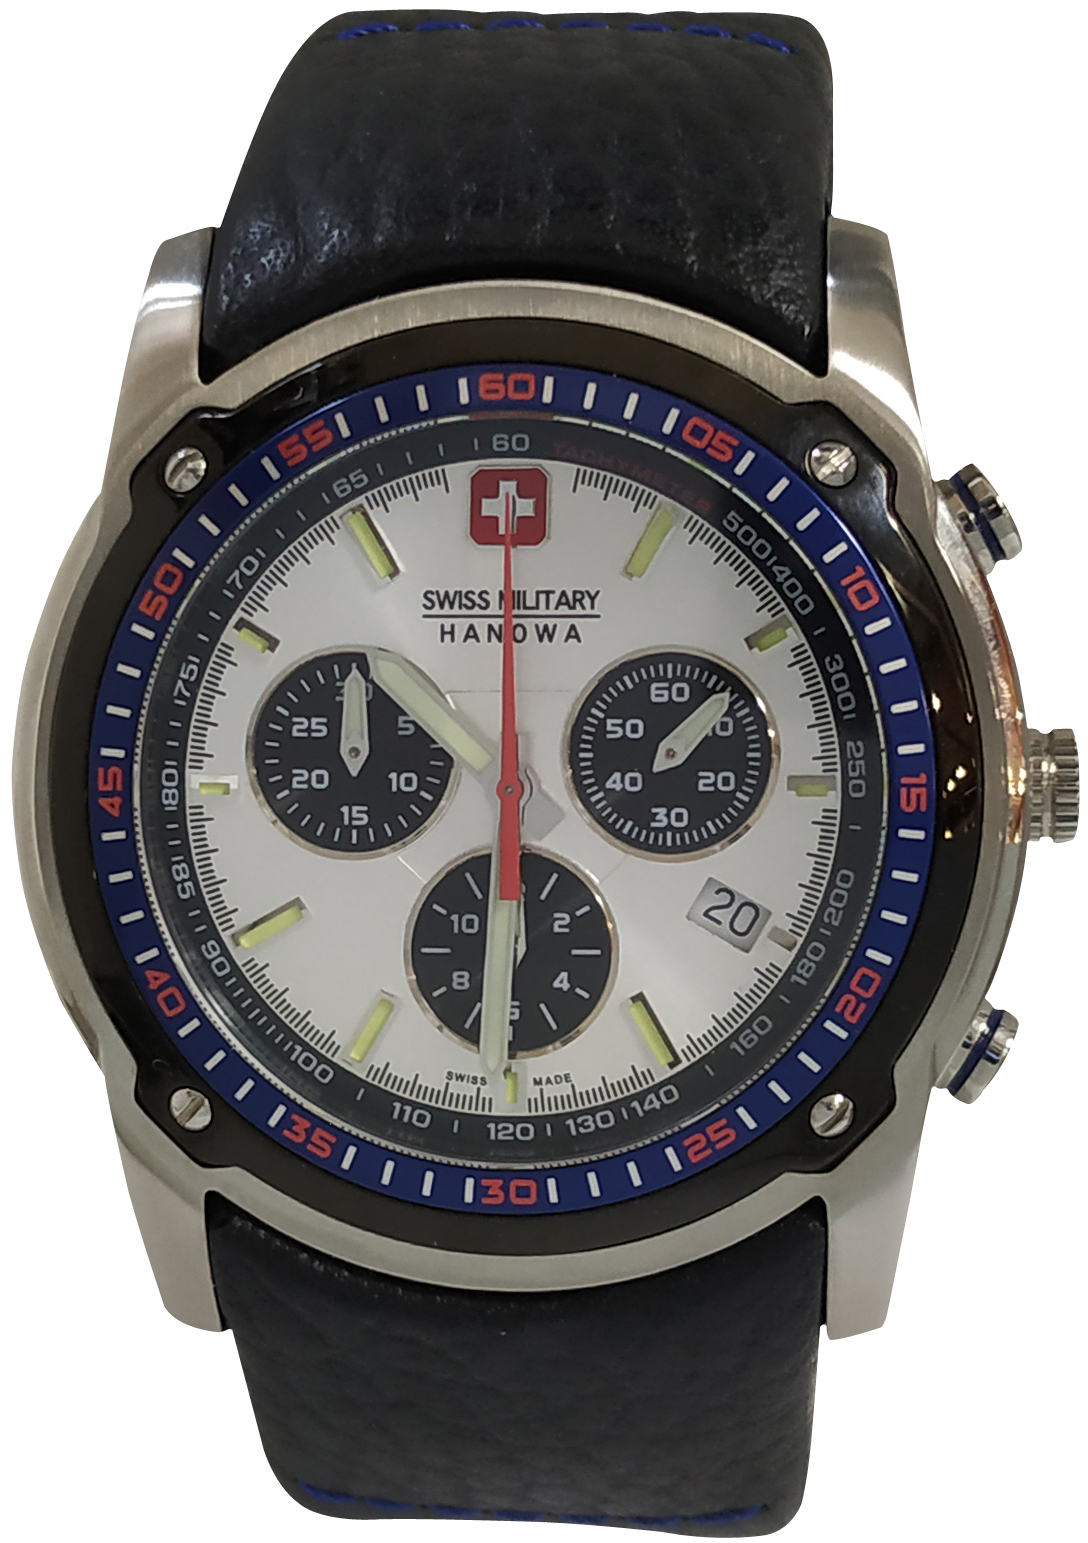 Swiss Military Hanowa Pathfinder Watch 6-4129.04.001